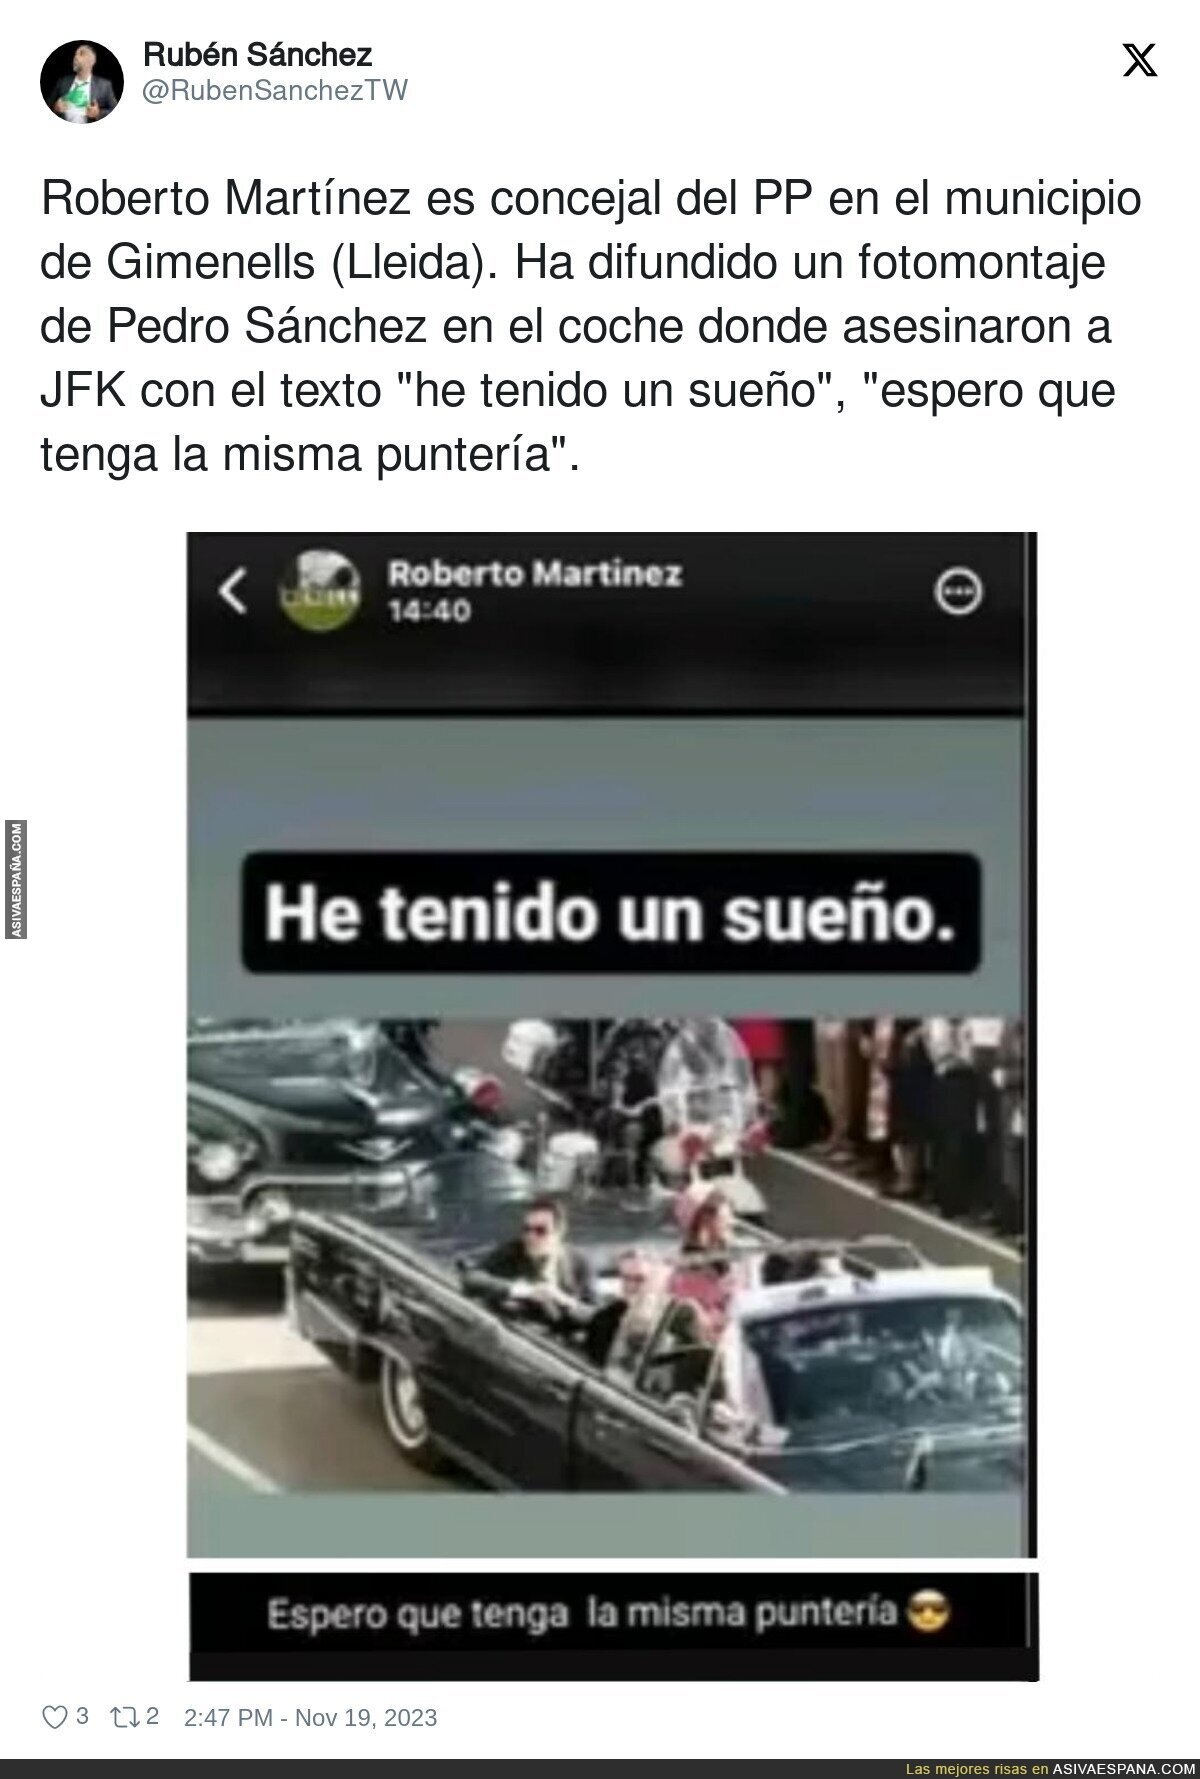 El denunciable comentario de Roberto Martínez concejal del PP sobre Pedro Sánchez